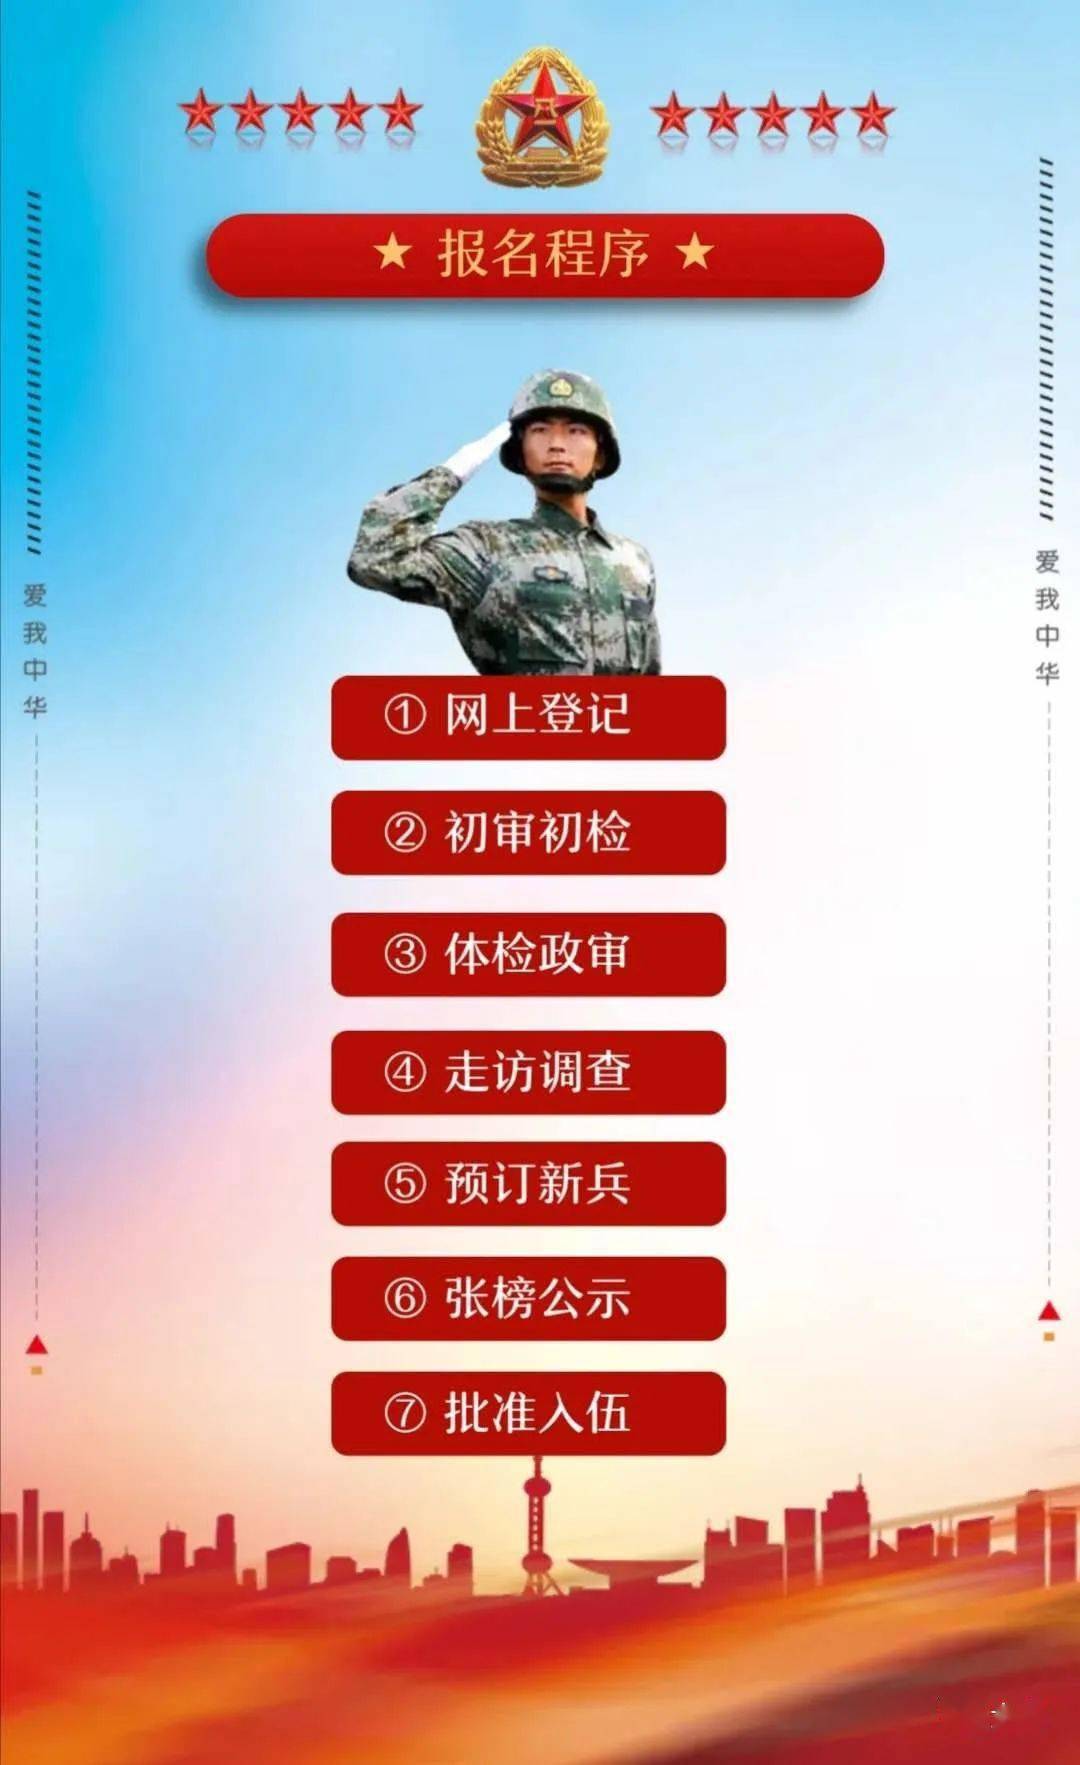 河北省征兵网图片